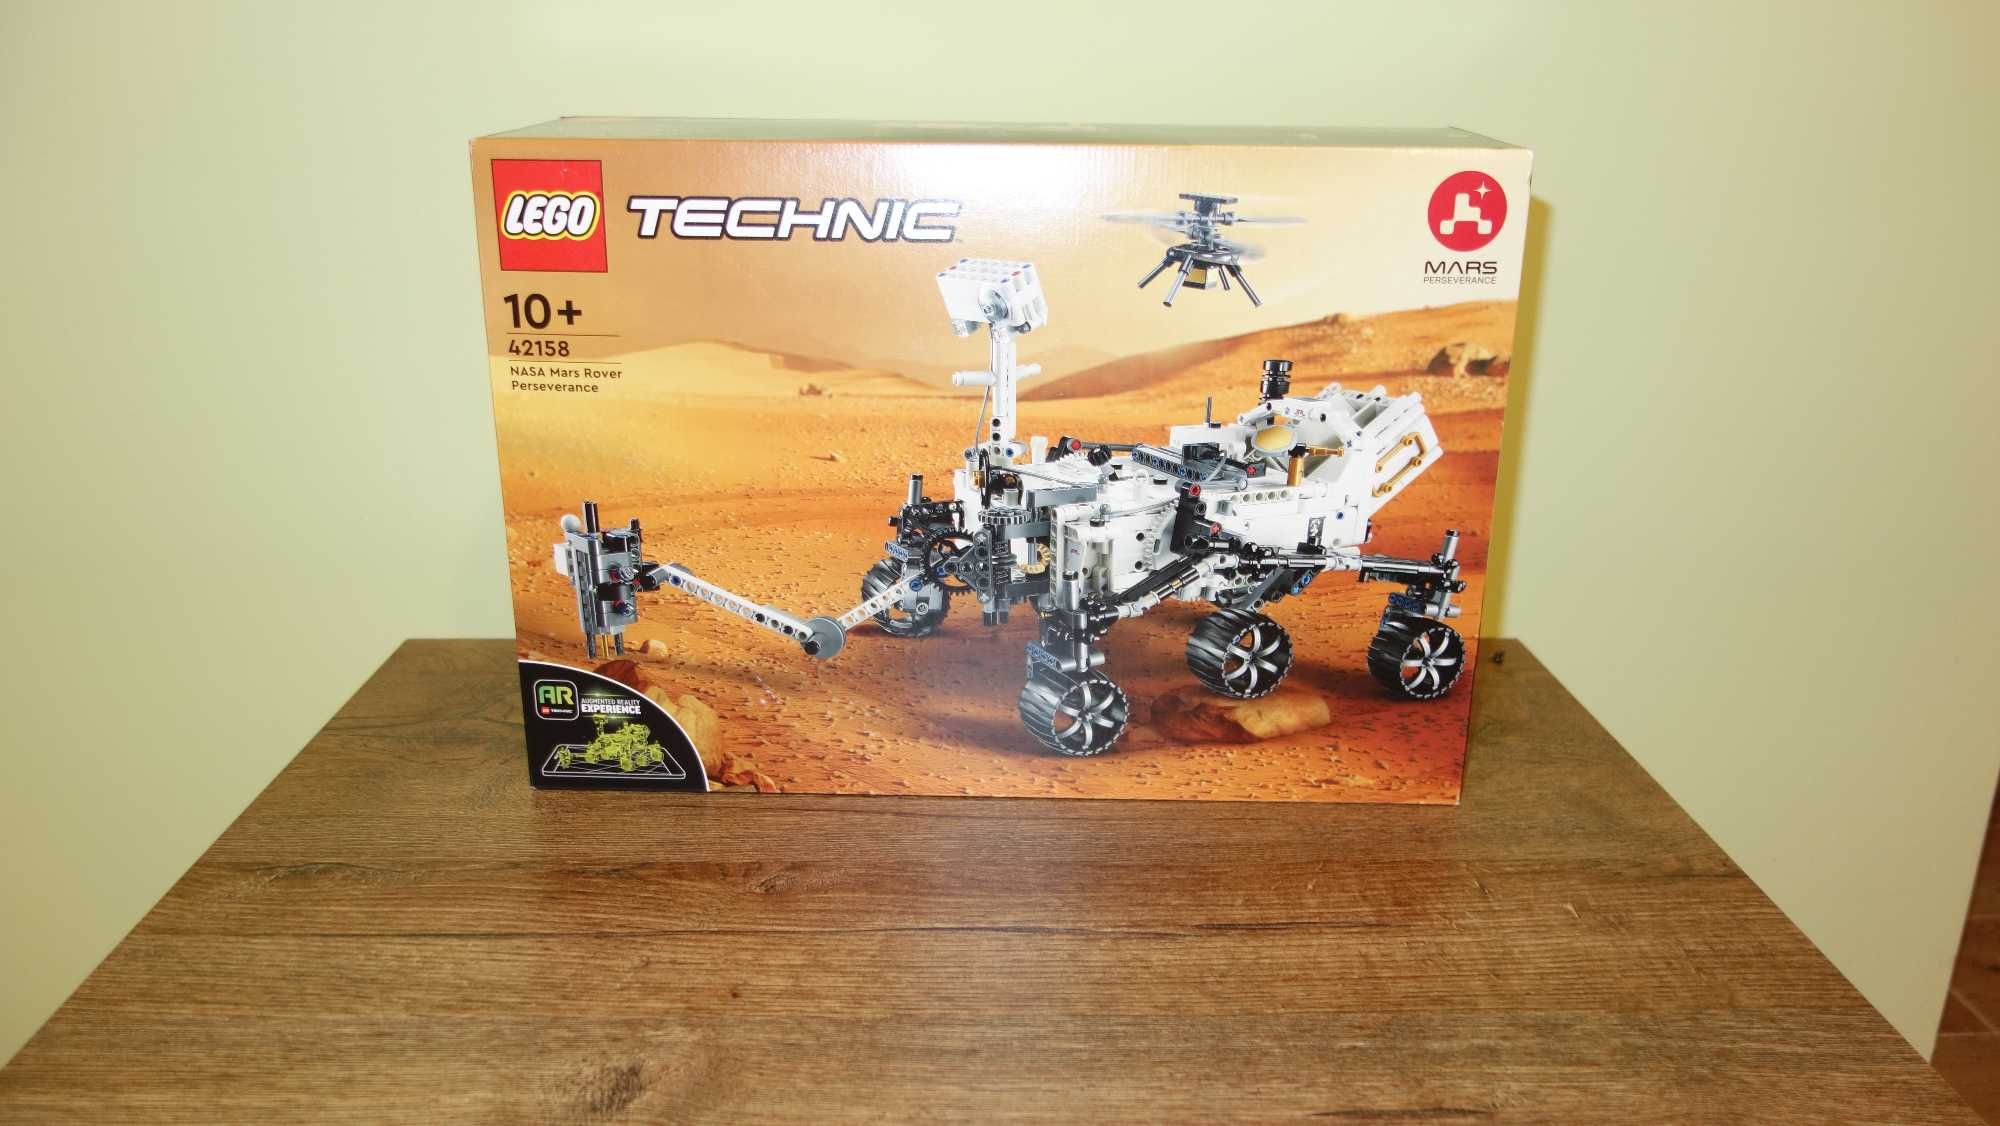 LEGO Technic 42158 NASA mars rover perseverance.